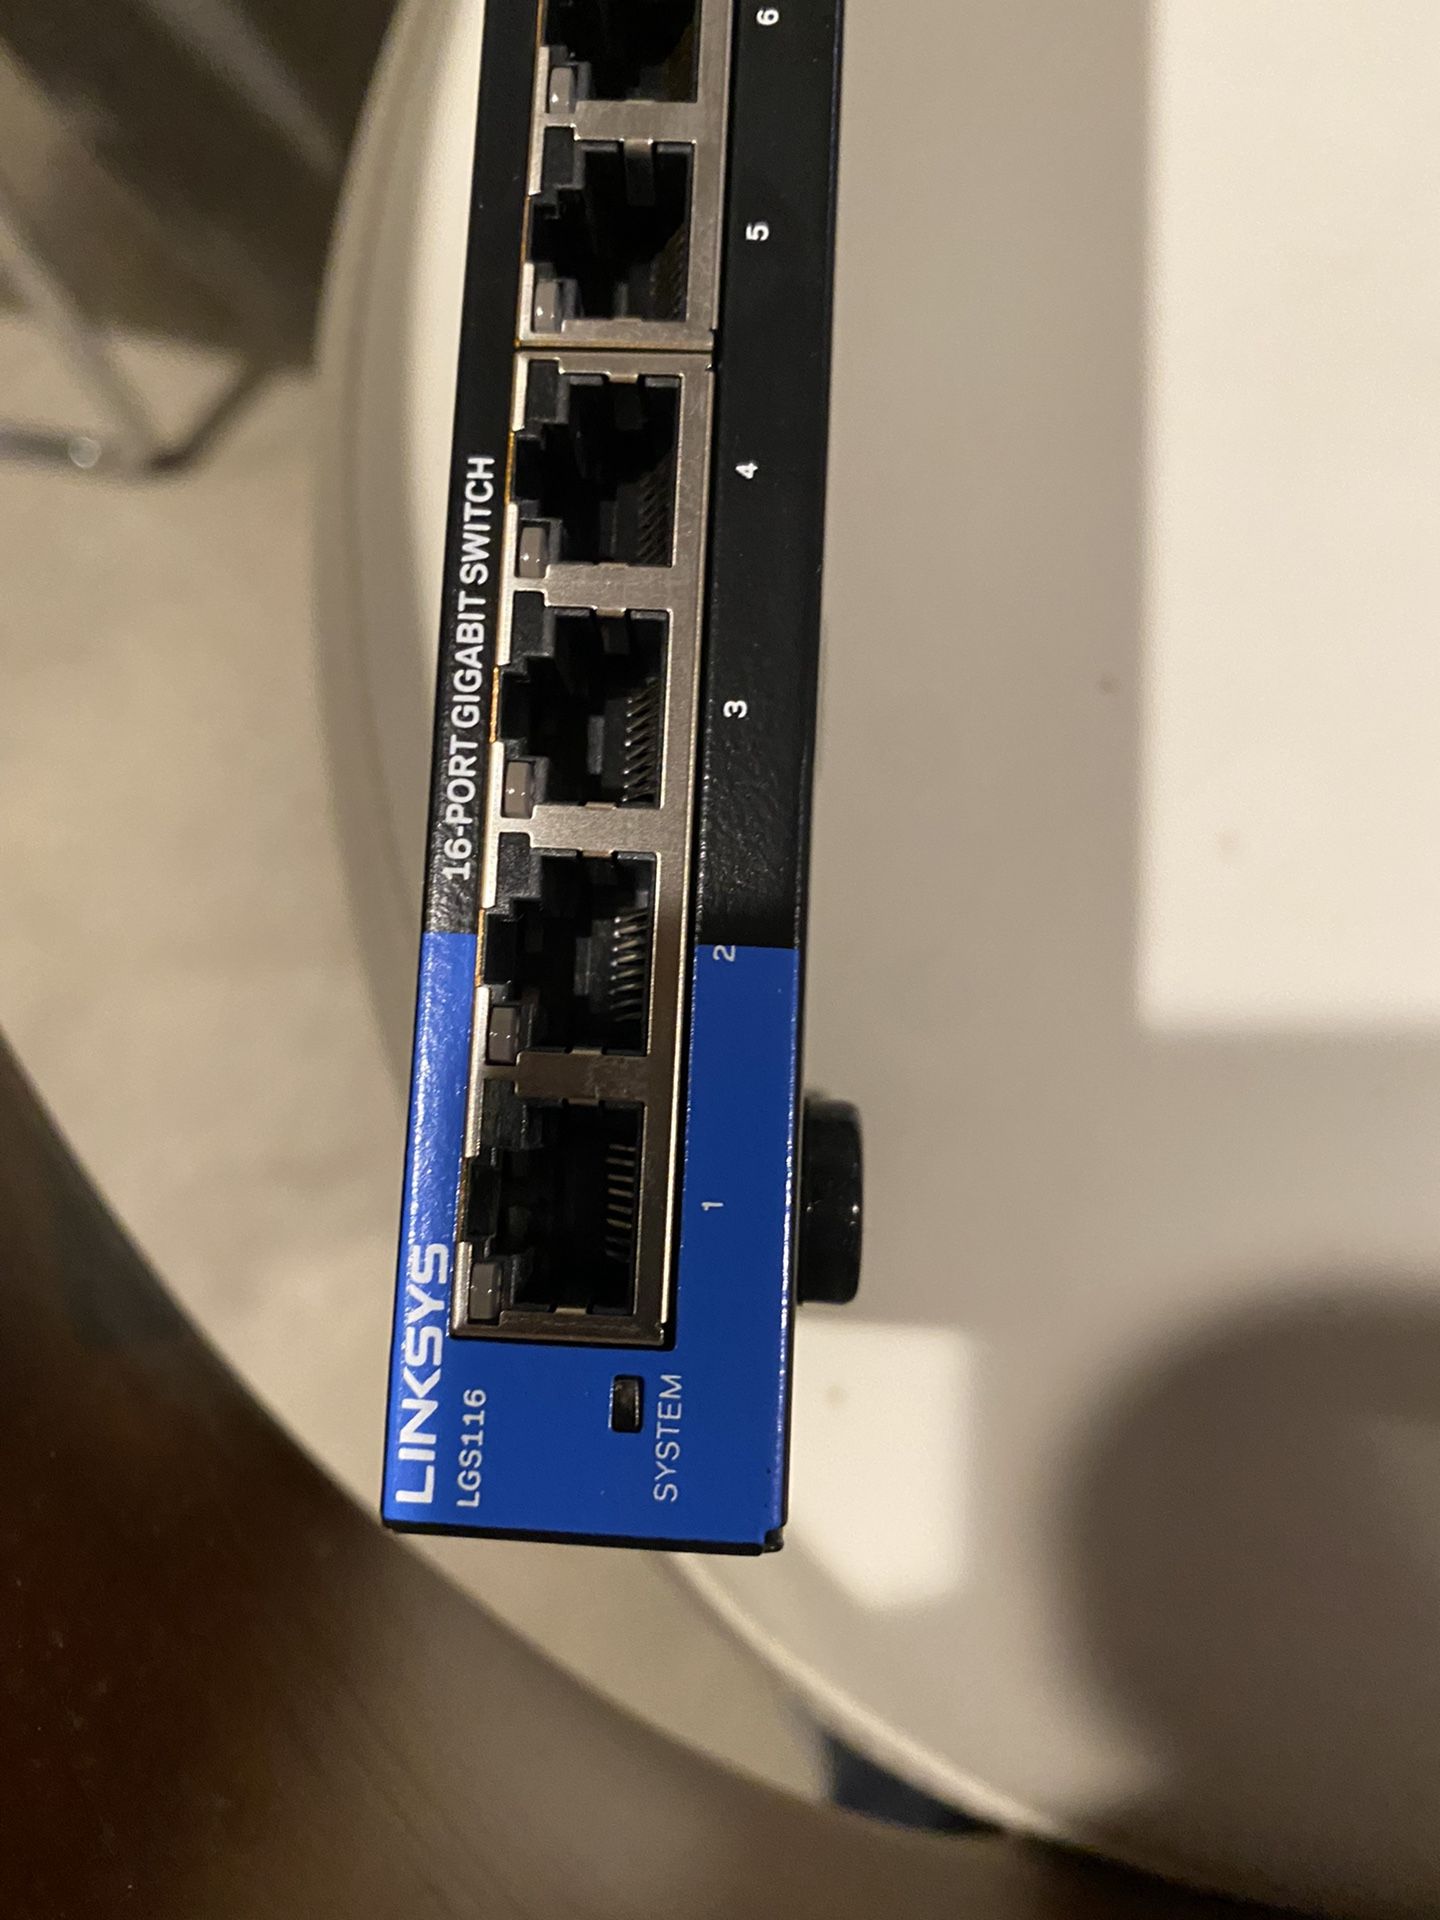 Linksys 16 port gigabit switch